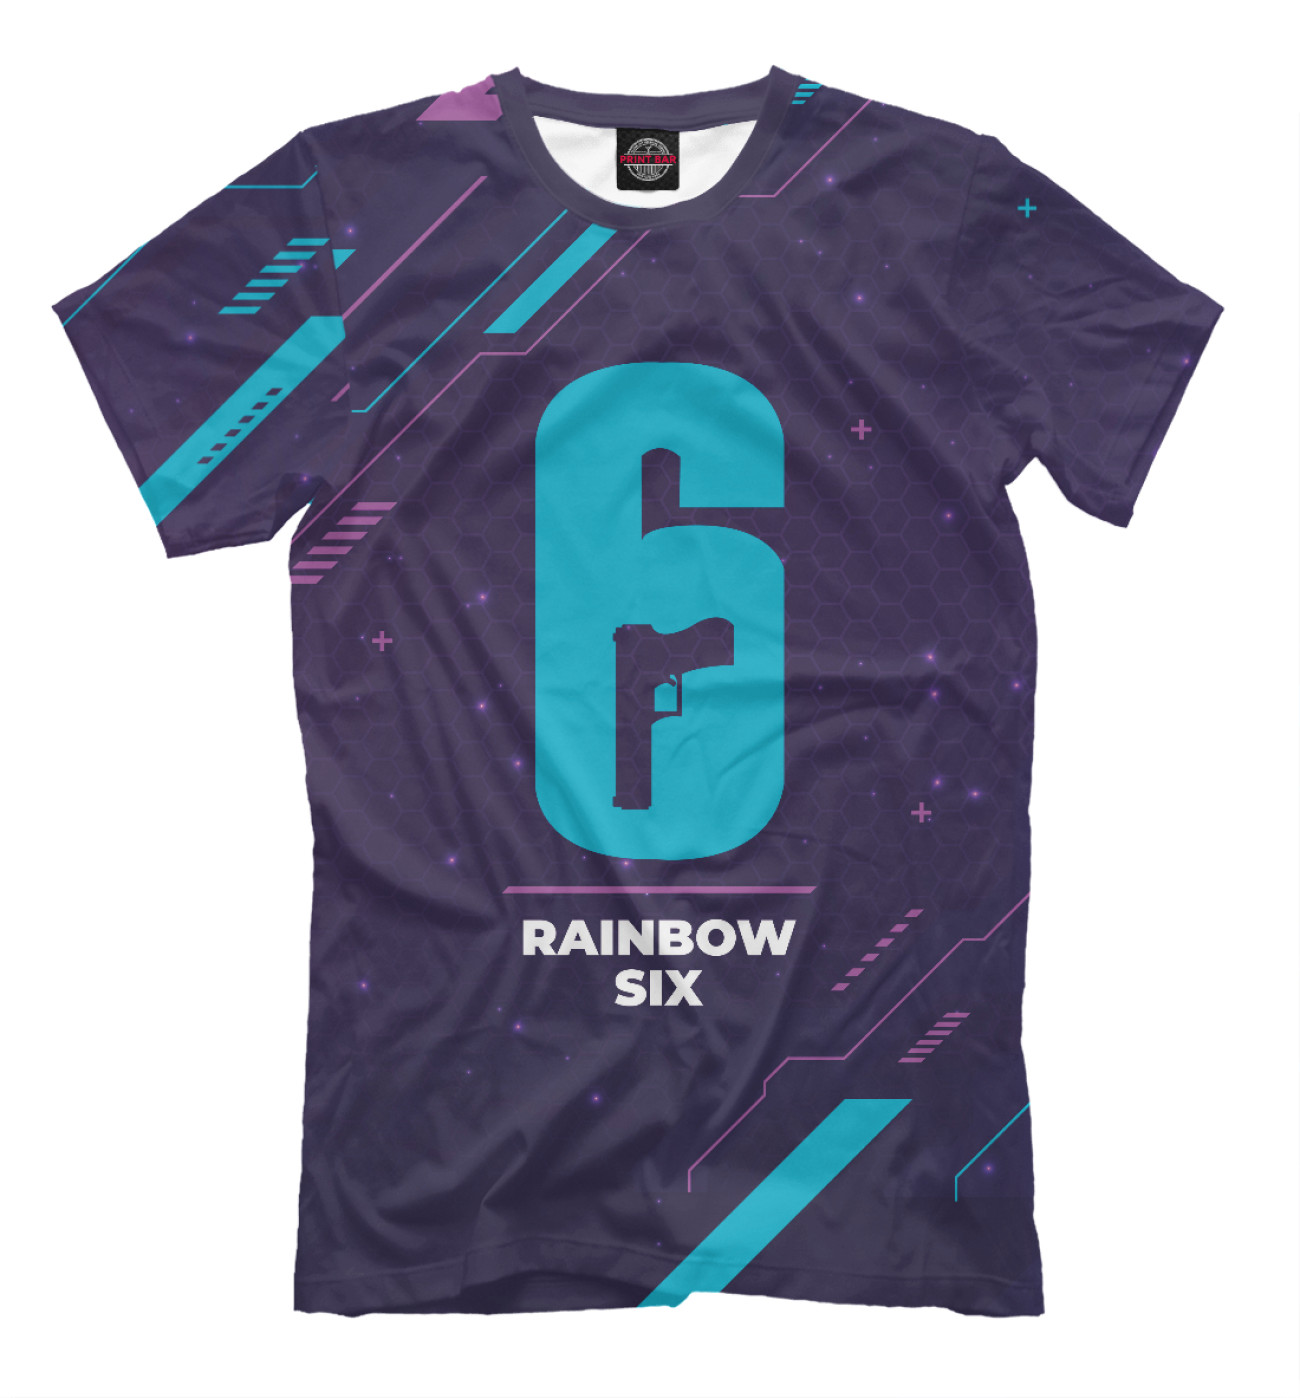 Мужская Футболка Rainbow Six Gaming Neon, артикул: RBS-367646-fut-2